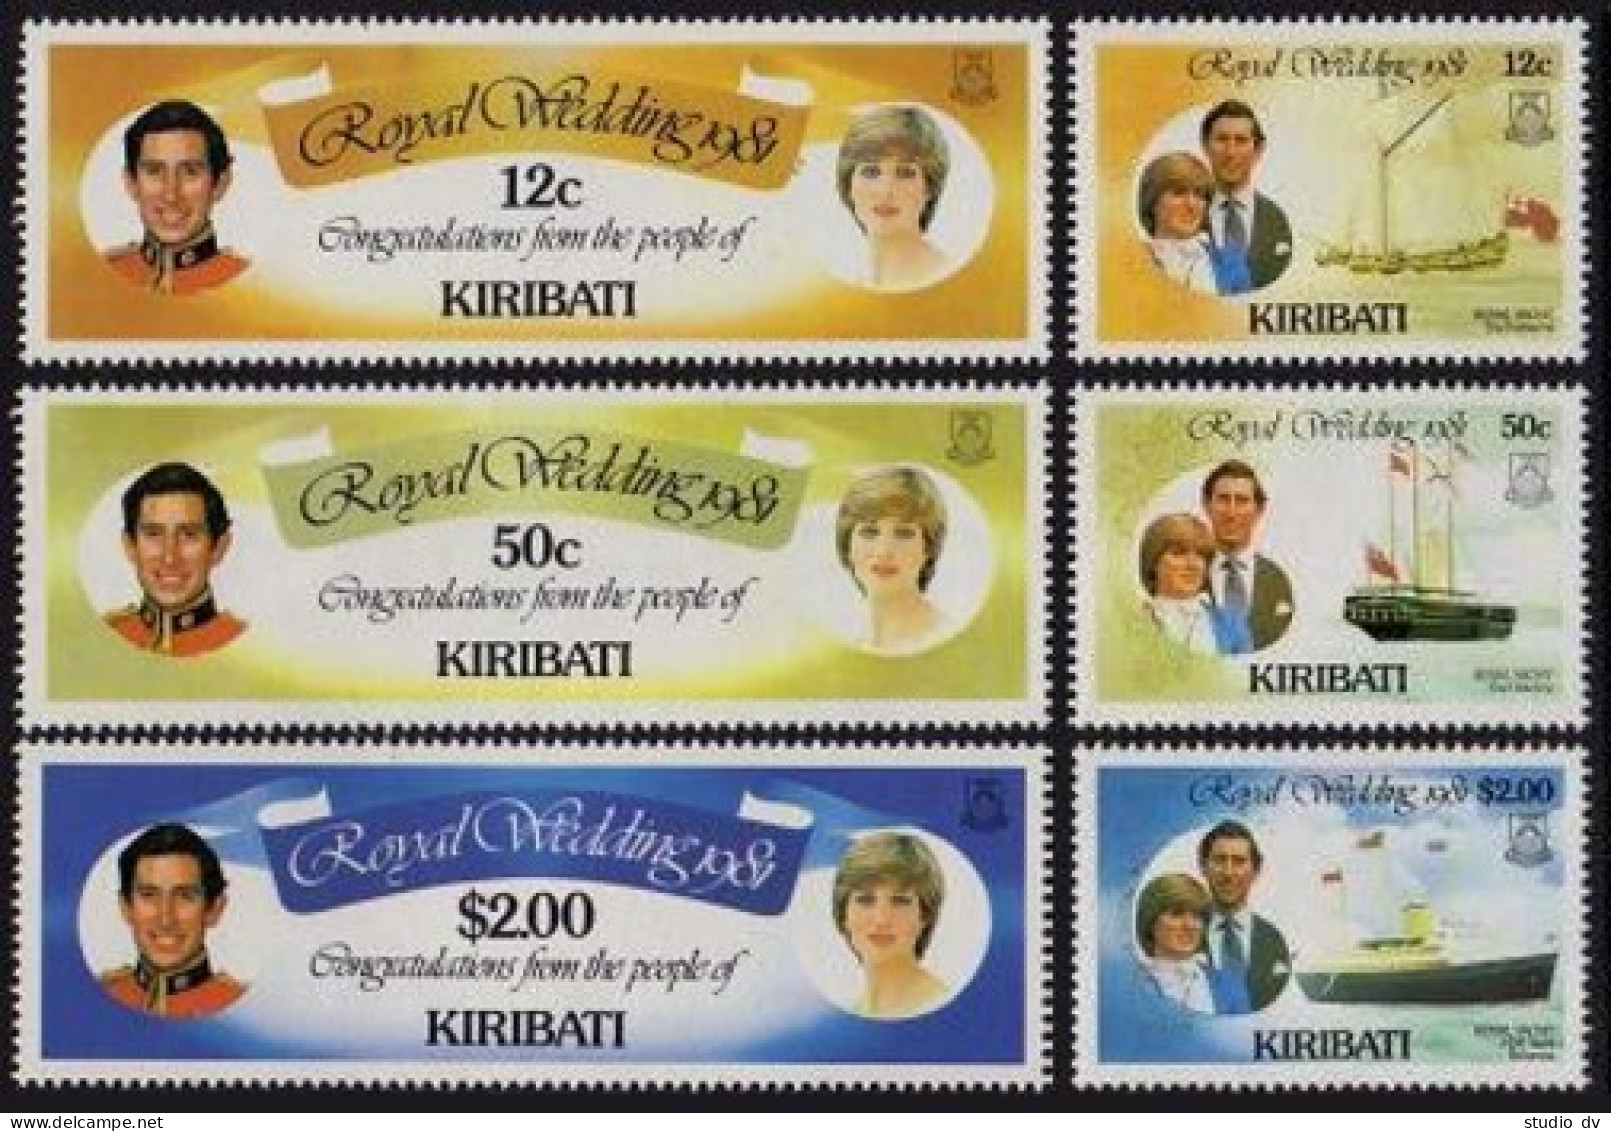 Kiribati 373-378, 379, MNH. Mi 371-376,Bl.8. Royal Wedding 1981. Charles, Diana. - Kiribati (1979-...)